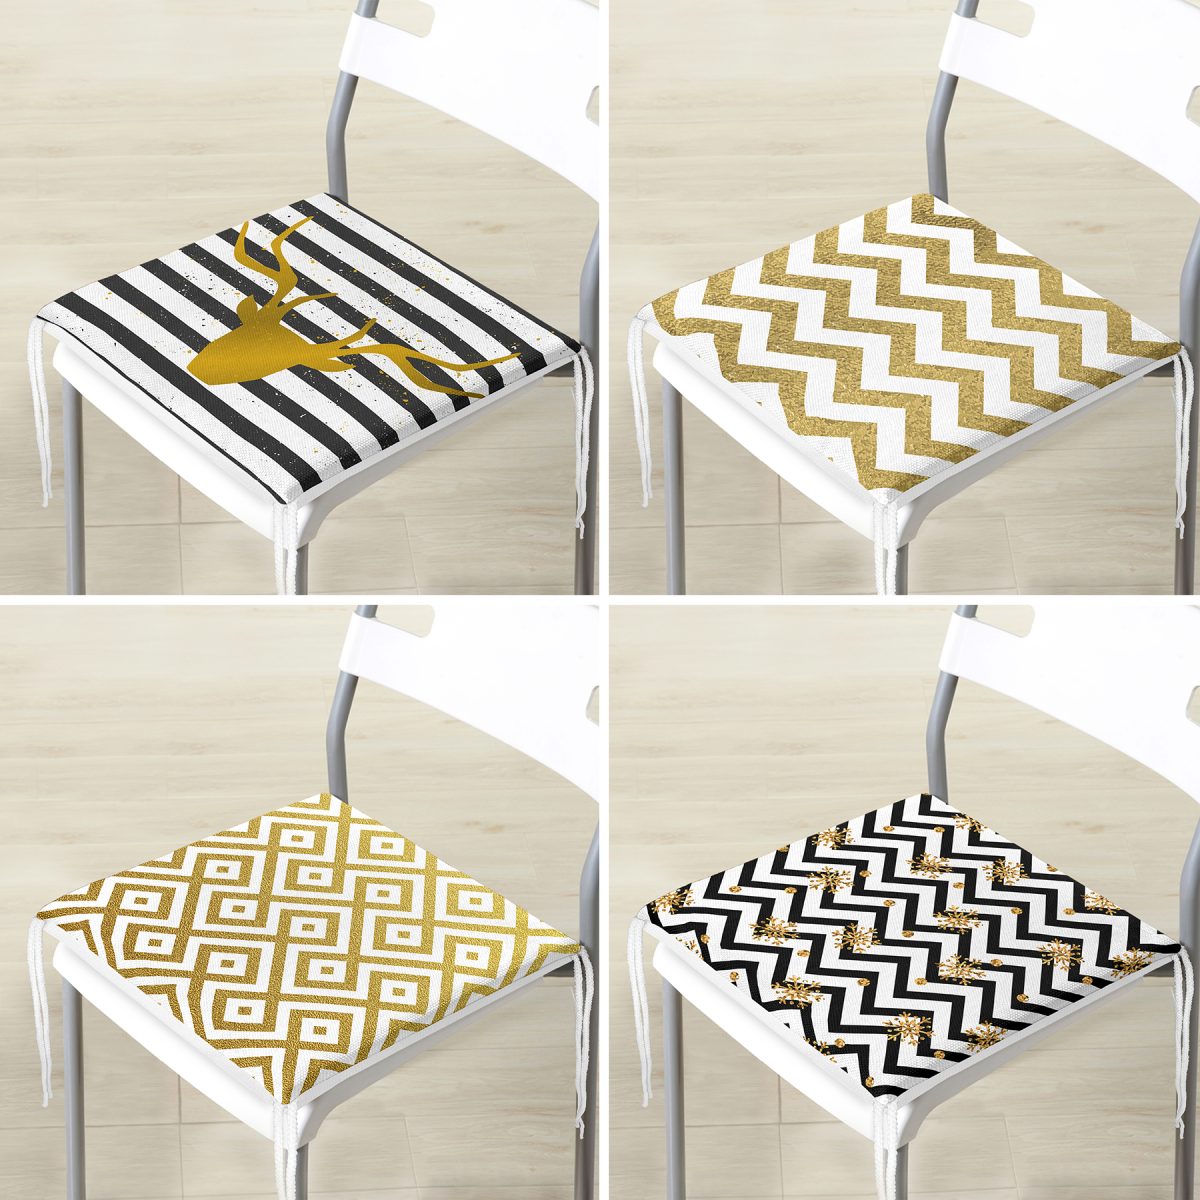 4'lü Altın Varaklı Geometrik Desenli Dekoratif Modern Fermuarlı Sandalye Minderi Seti Realhomes